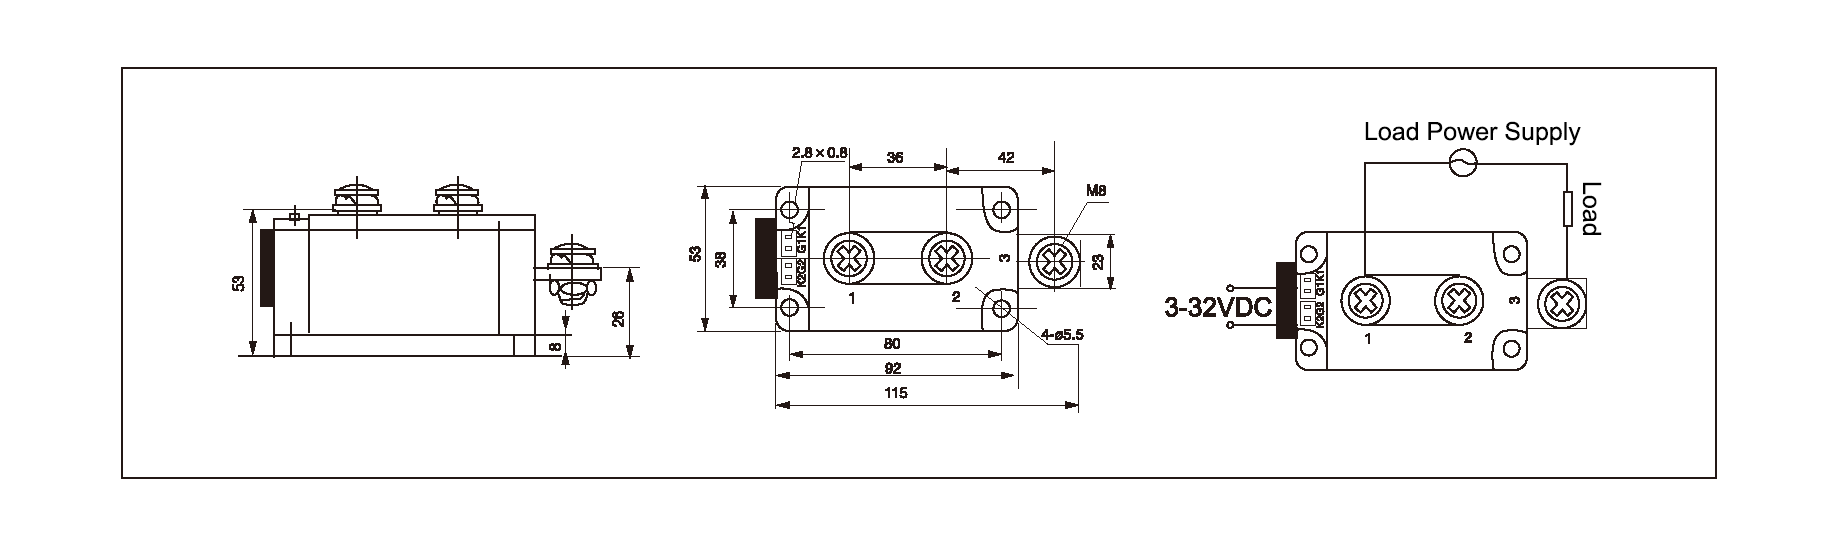 Dimension and circuit diagram - MGR H12400Z series